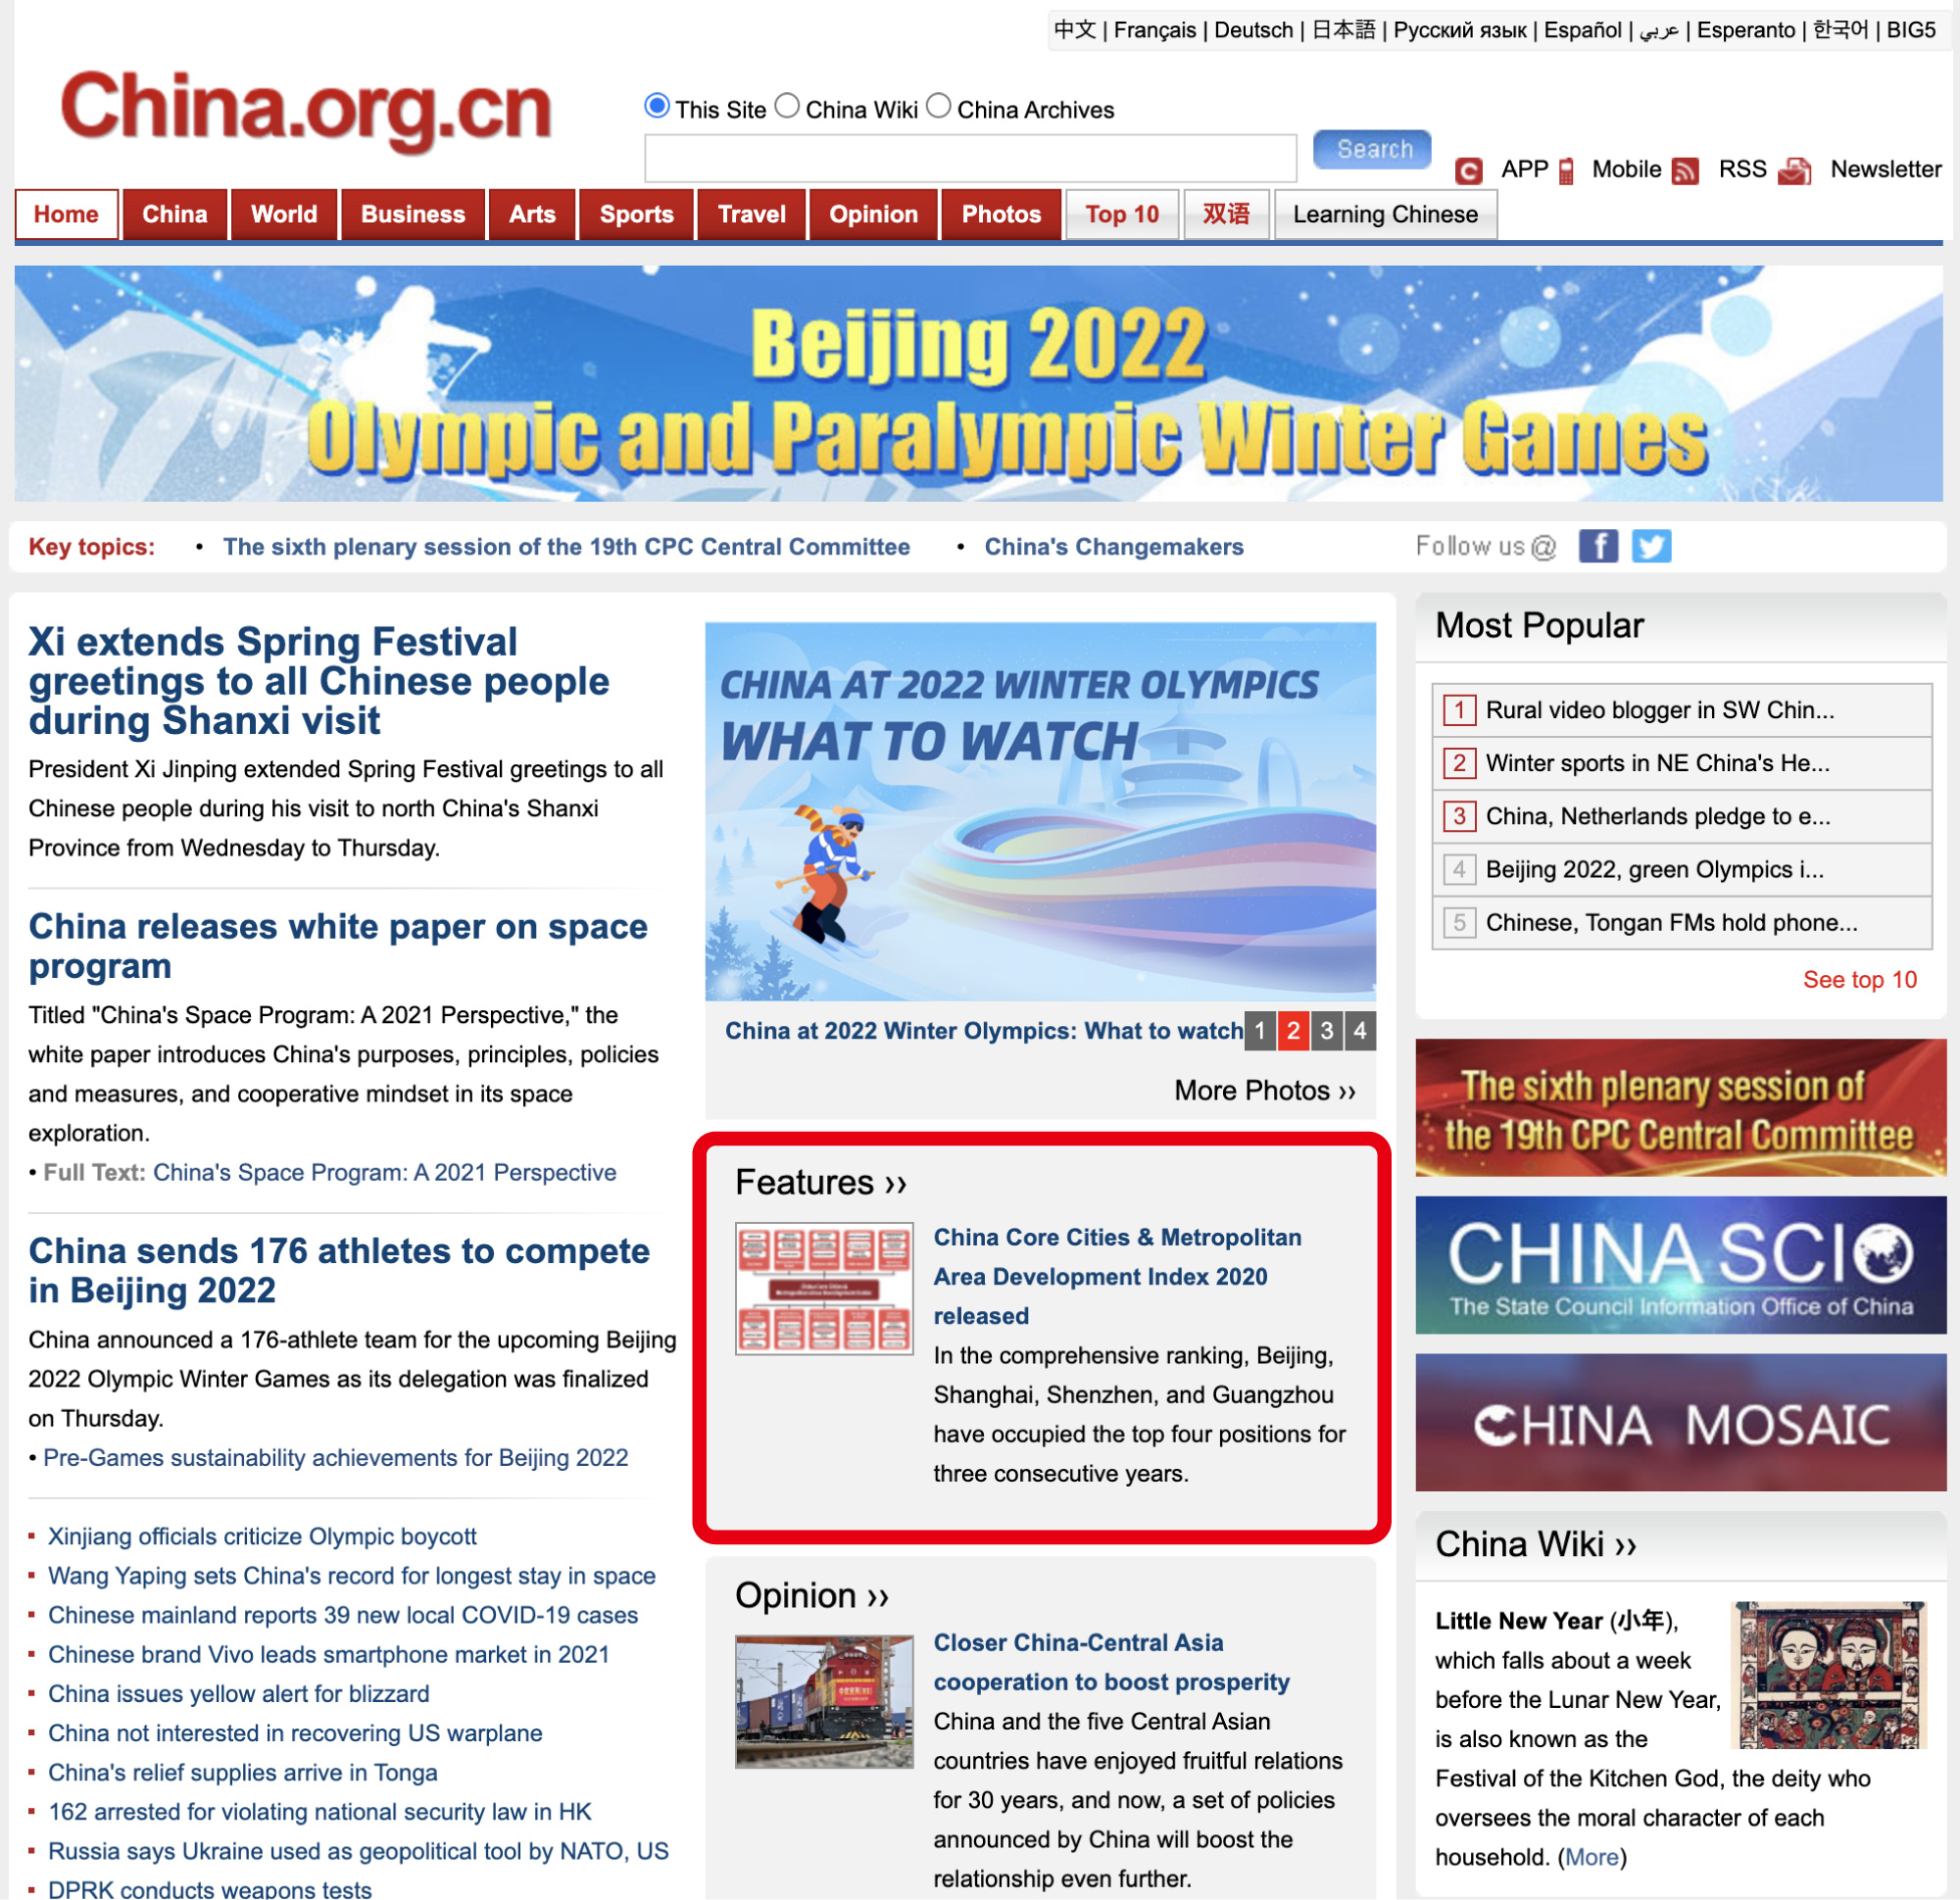 【ランキング】〈中国中心都市&都市圏発展指数2020〉を発表 〜北京、上海、深圳が総合ランキングトップ3に〜